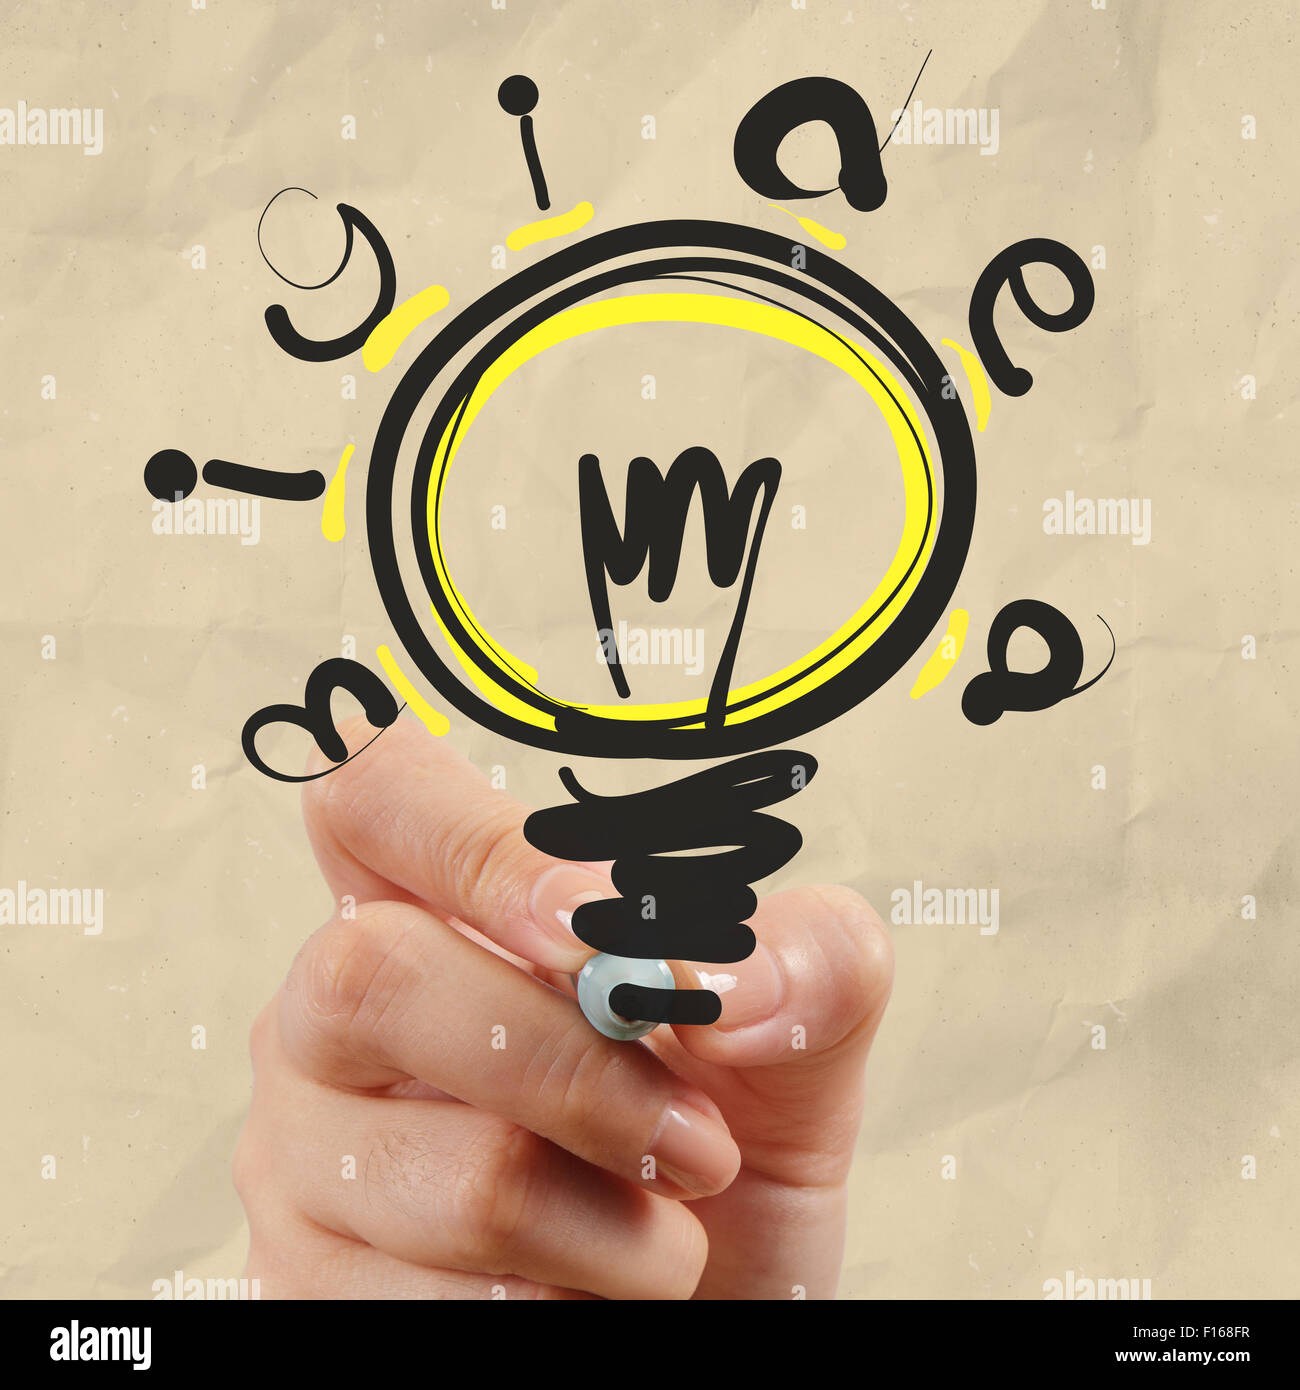 Dessin à la main par une ampoule papier froissé comme concept créatif Banque D'Images